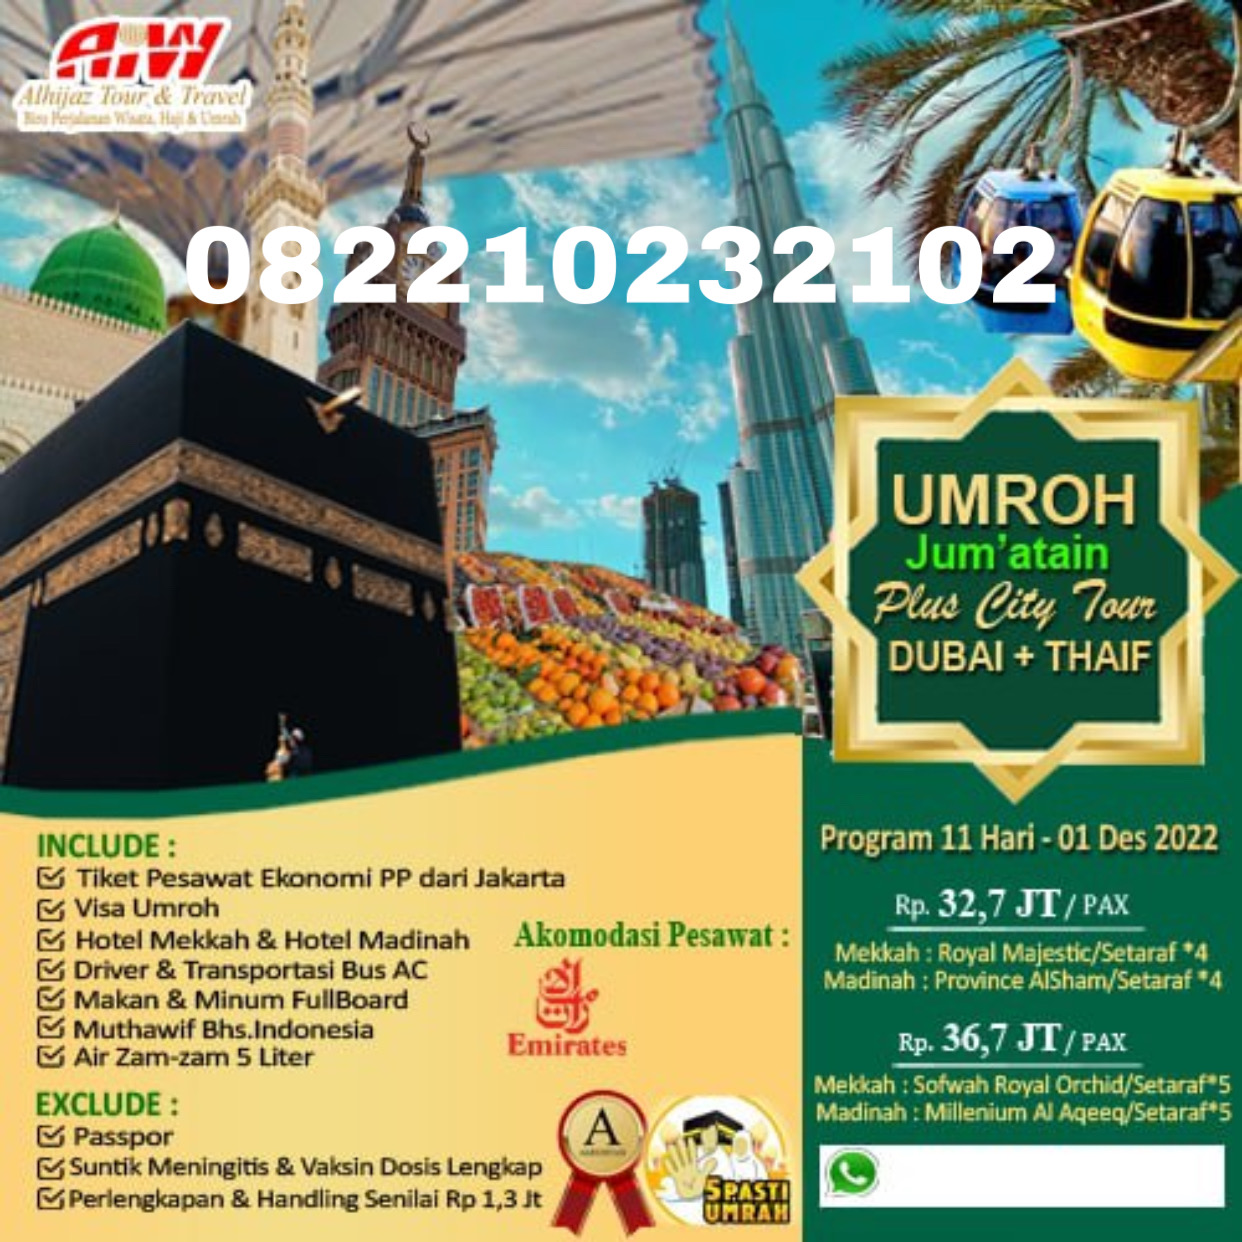 Promo Umroh Jum’atain 11 hari  ( City Tour Dubai + Thaif )